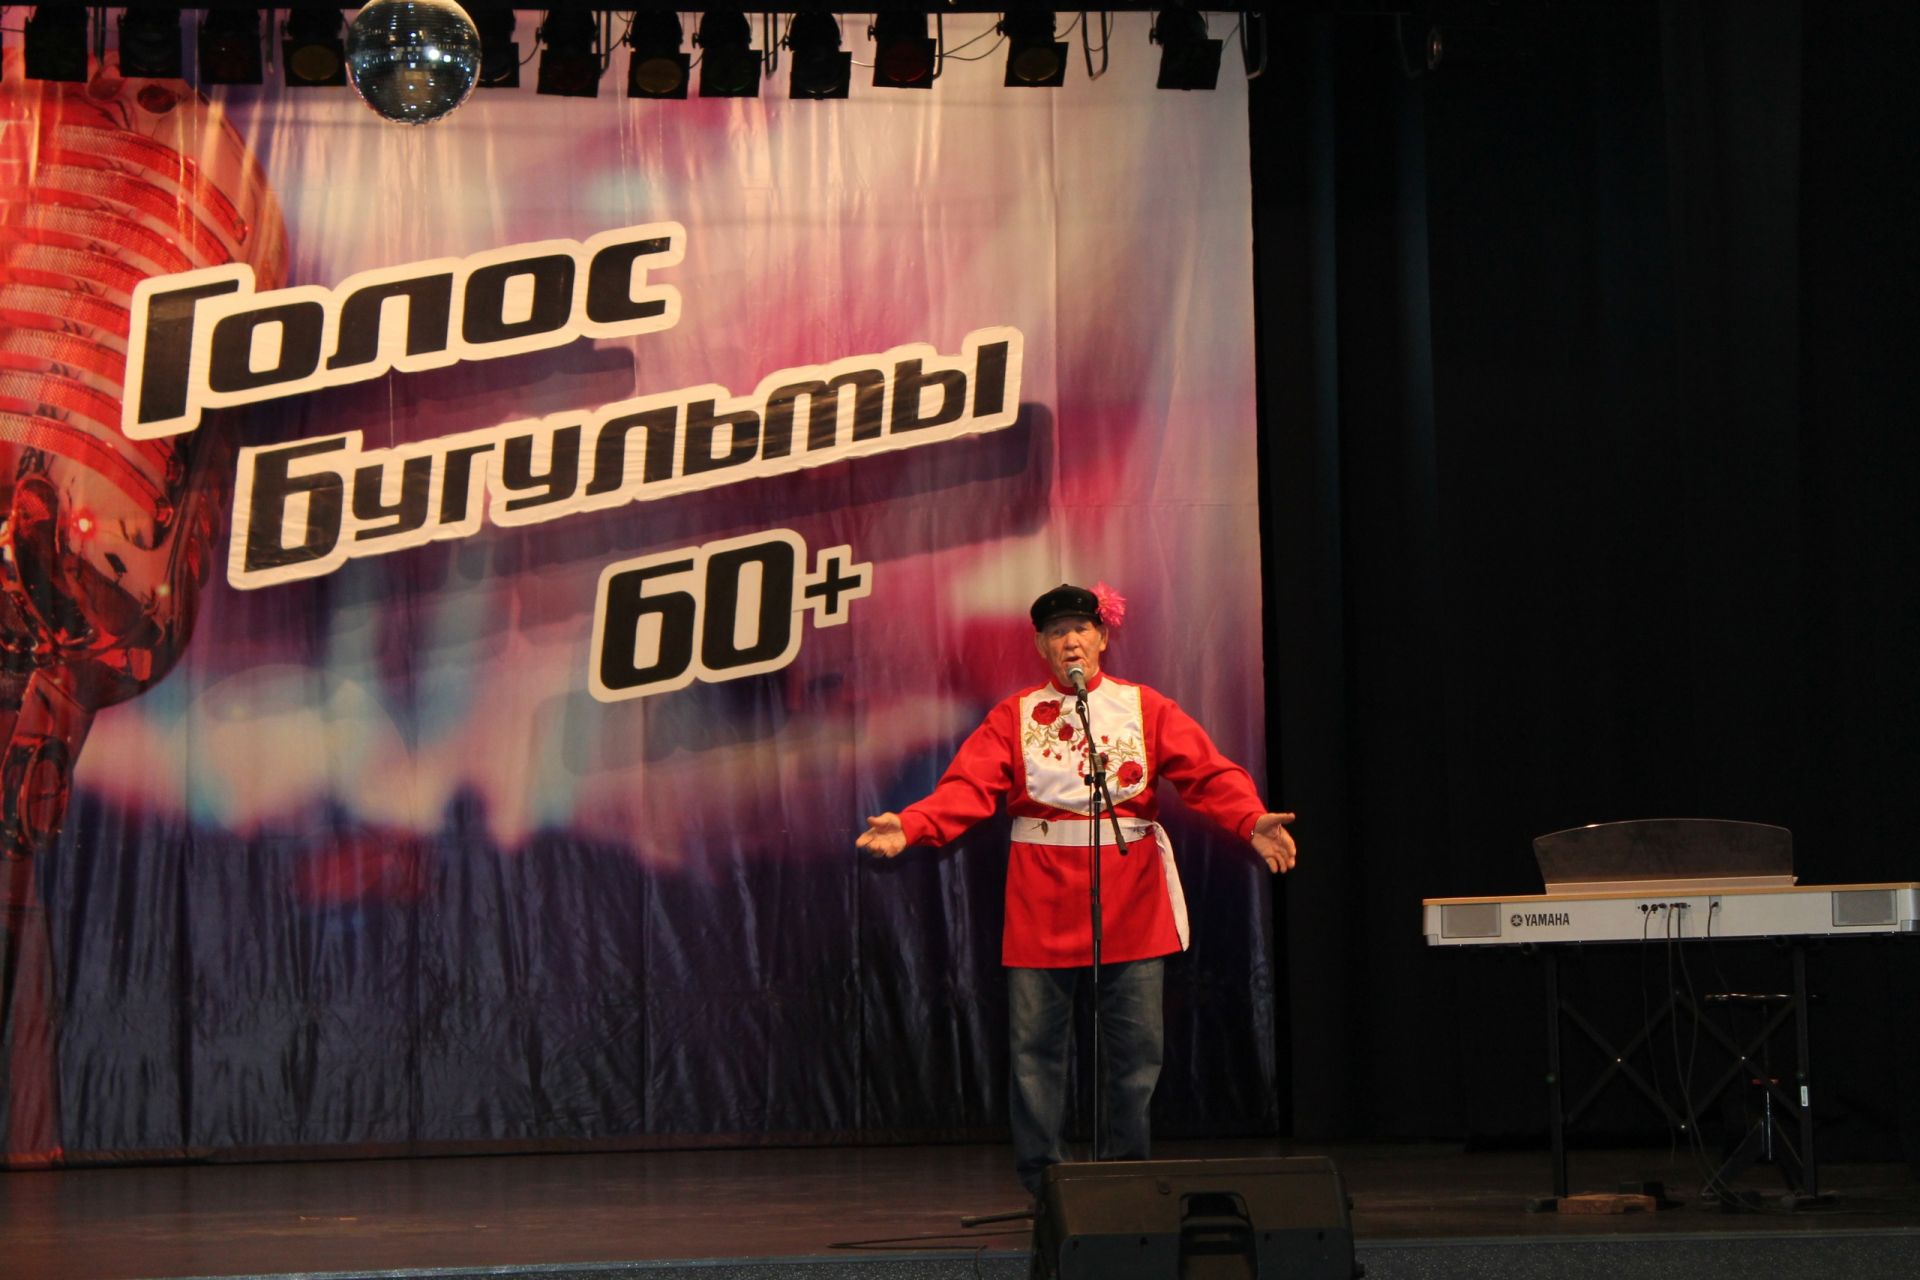 В Бугульме прошёл отборочный тур проекта «Голос Бугульмы 60+»